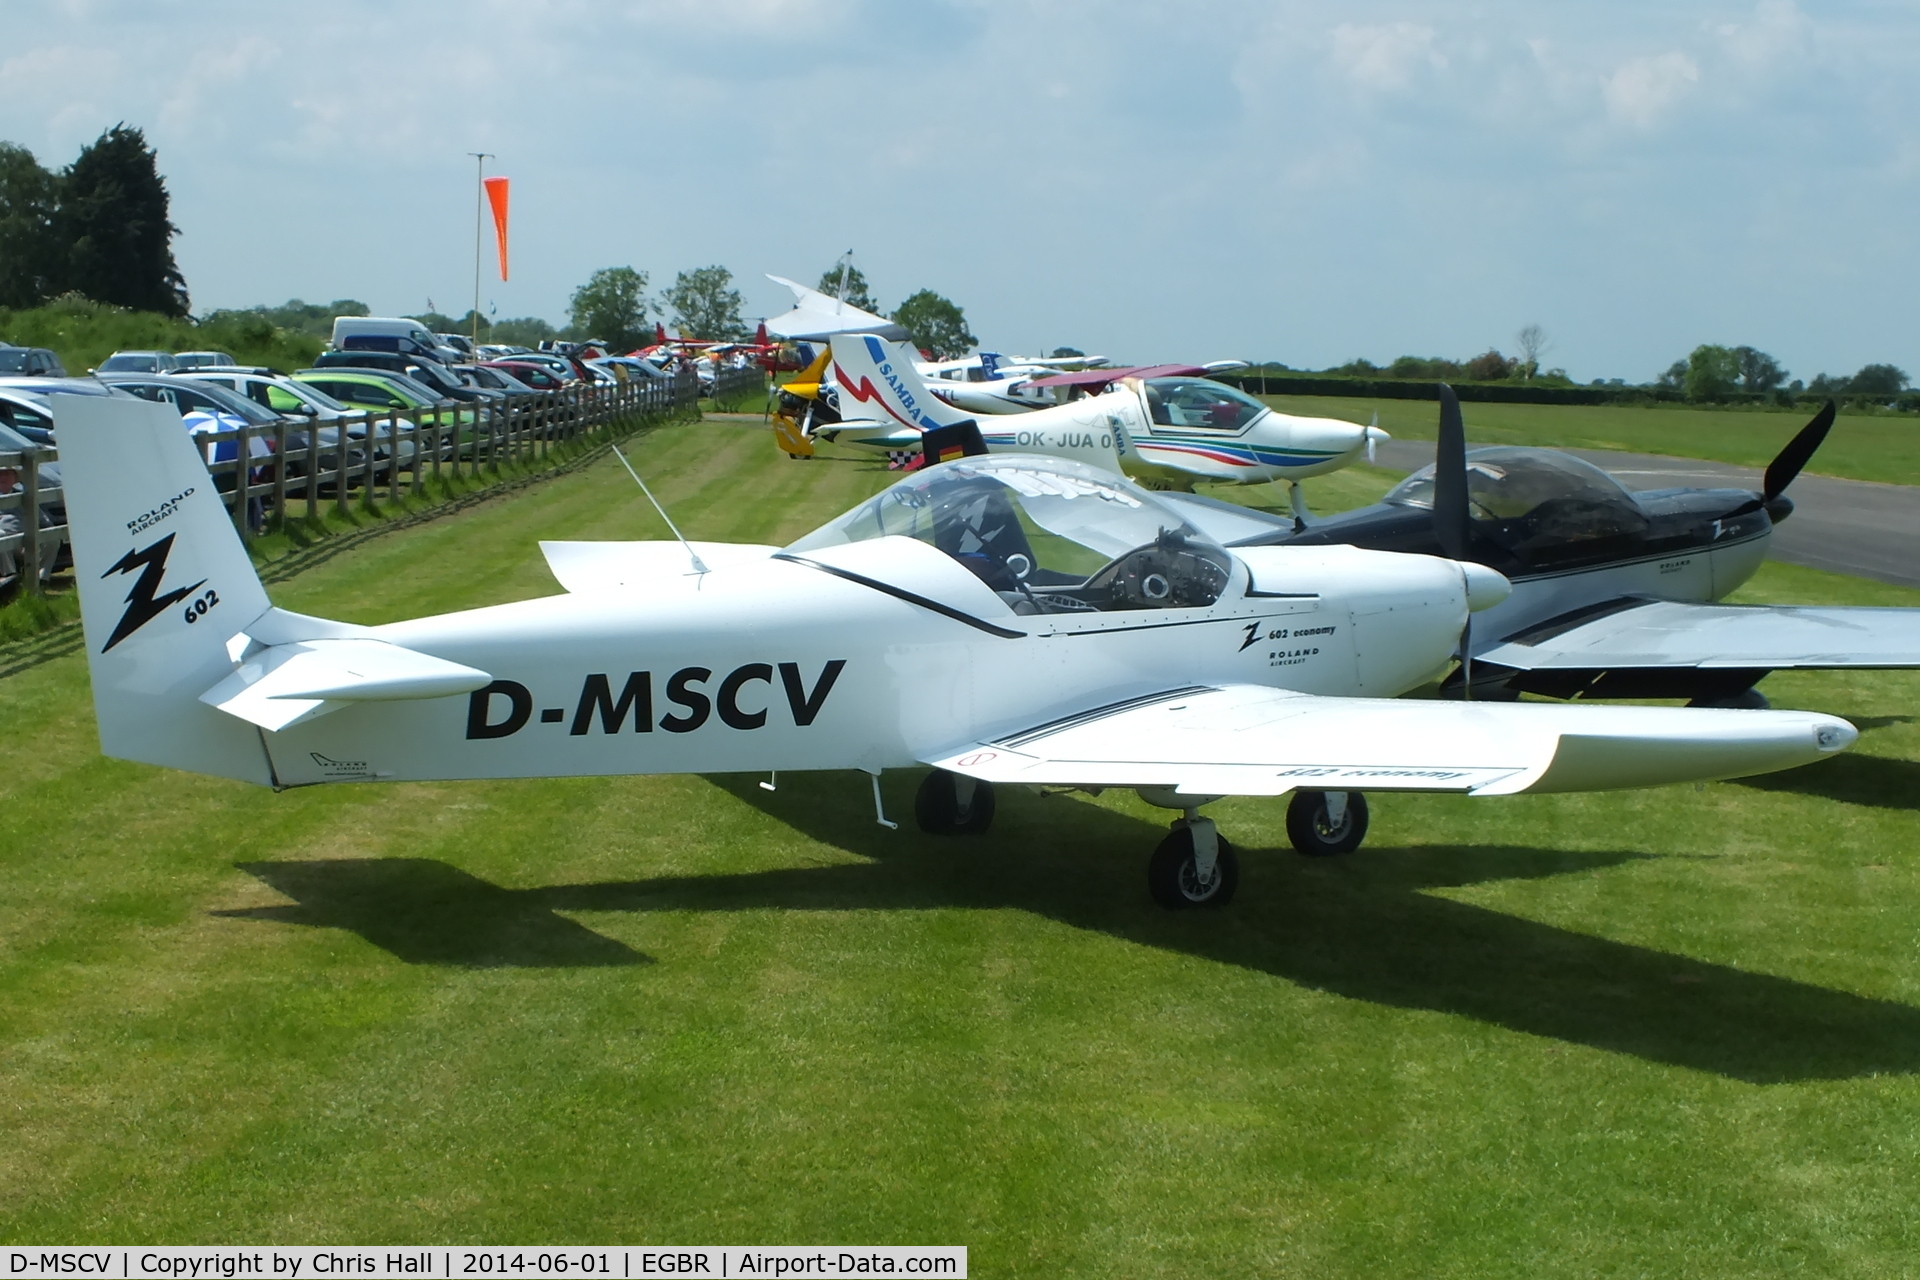 D-MSCV, 2009 Roland Z-602 C/N Not found D-MSCV, at Breighton's Open Cockpit & Biplane Fly-in, 2014